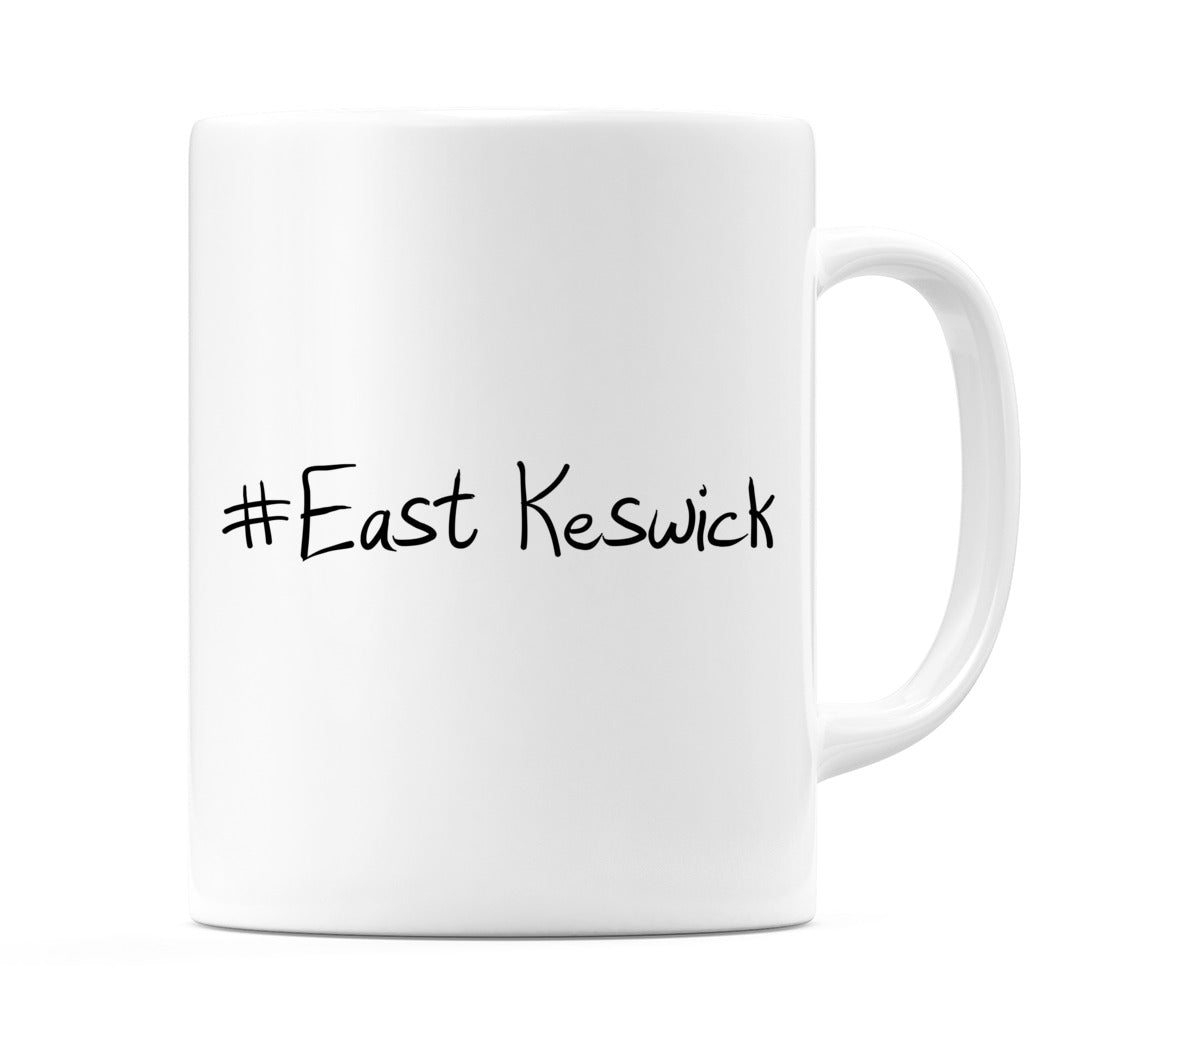 #East Keswick Mug